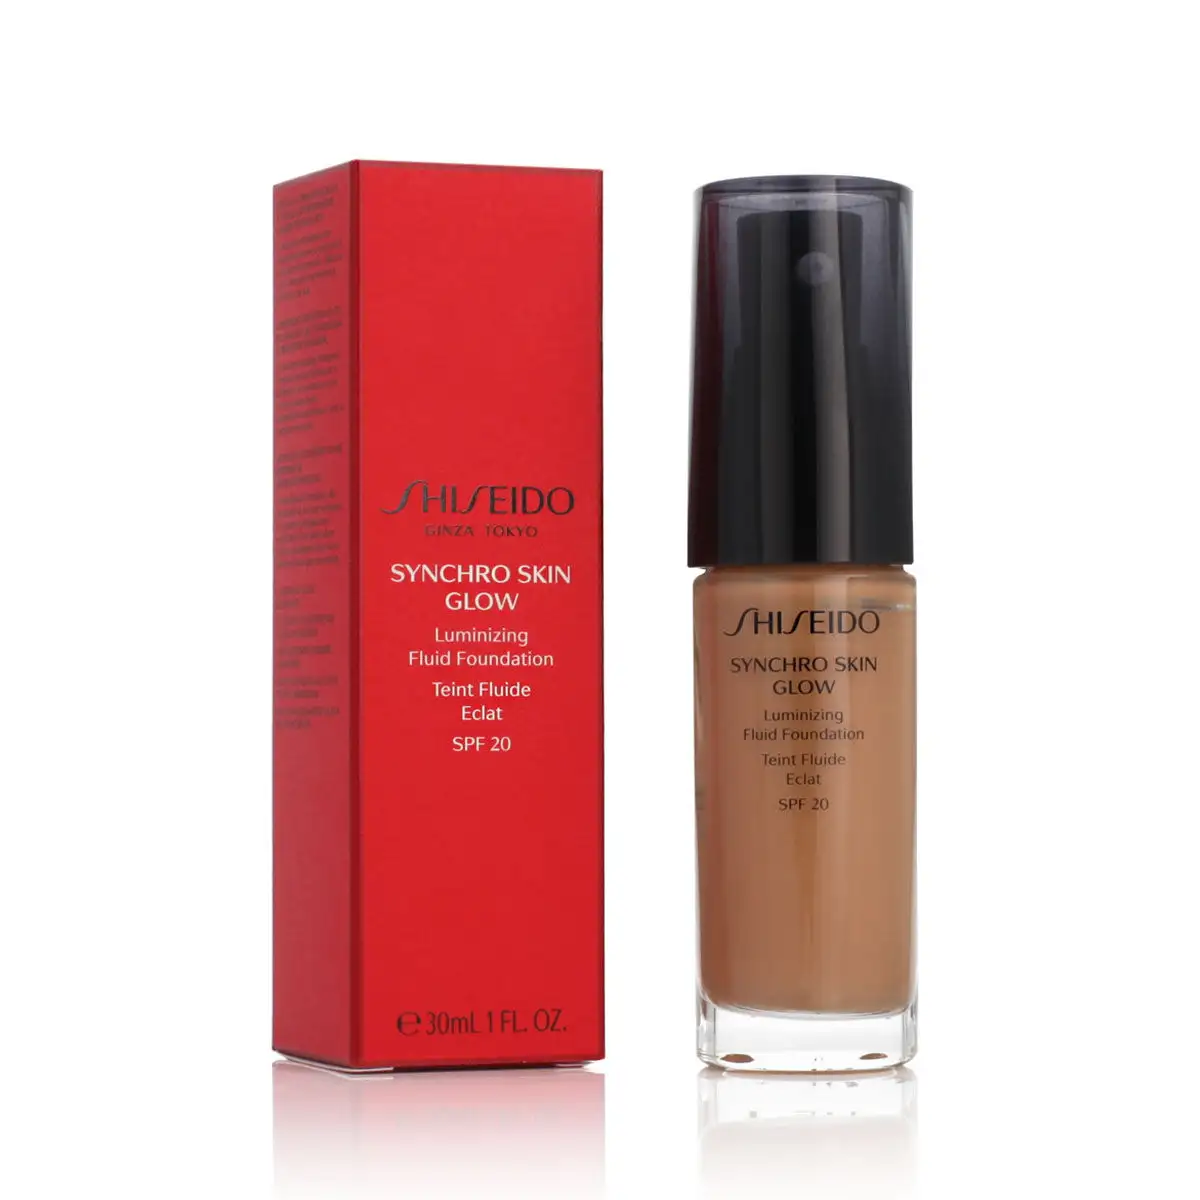 Base de maquillage liquide shiseido synchro skin glow no 05 golden spf 20 30 ml_9733. Bienvenue chez DIAYTAR SENEGAL - Où Chaque Produit a son Âme. Découvrez notre gamme et choisissez des articles qui résonnent avec votre personnalité et vos valeurs.